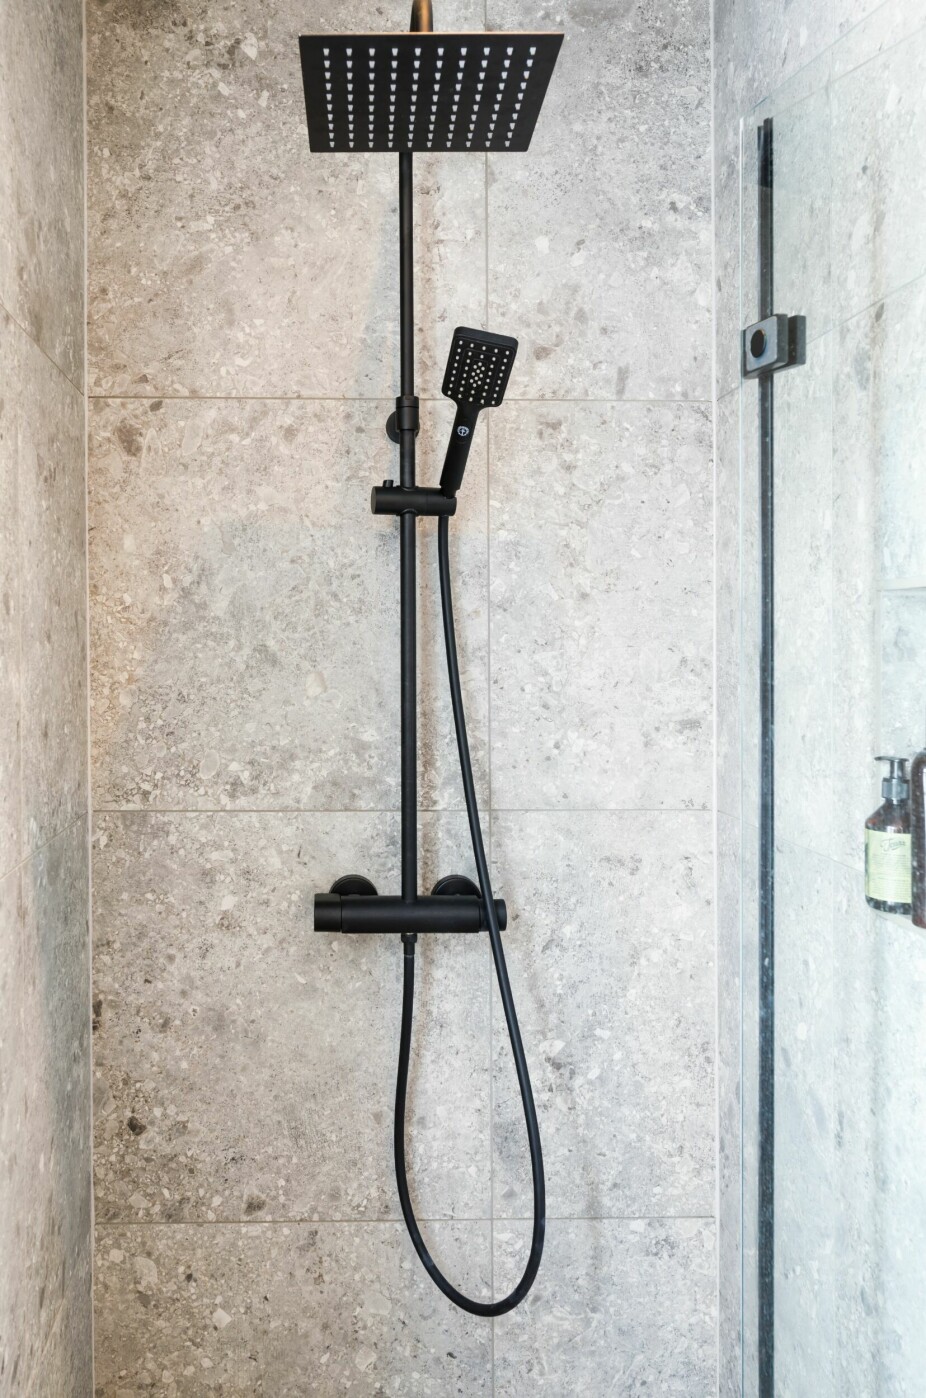 På grunn av den nye løsningen ble det også plass til dusj med ståhøyde på badet. Dusjarmaturen er fra Gustavsberg.